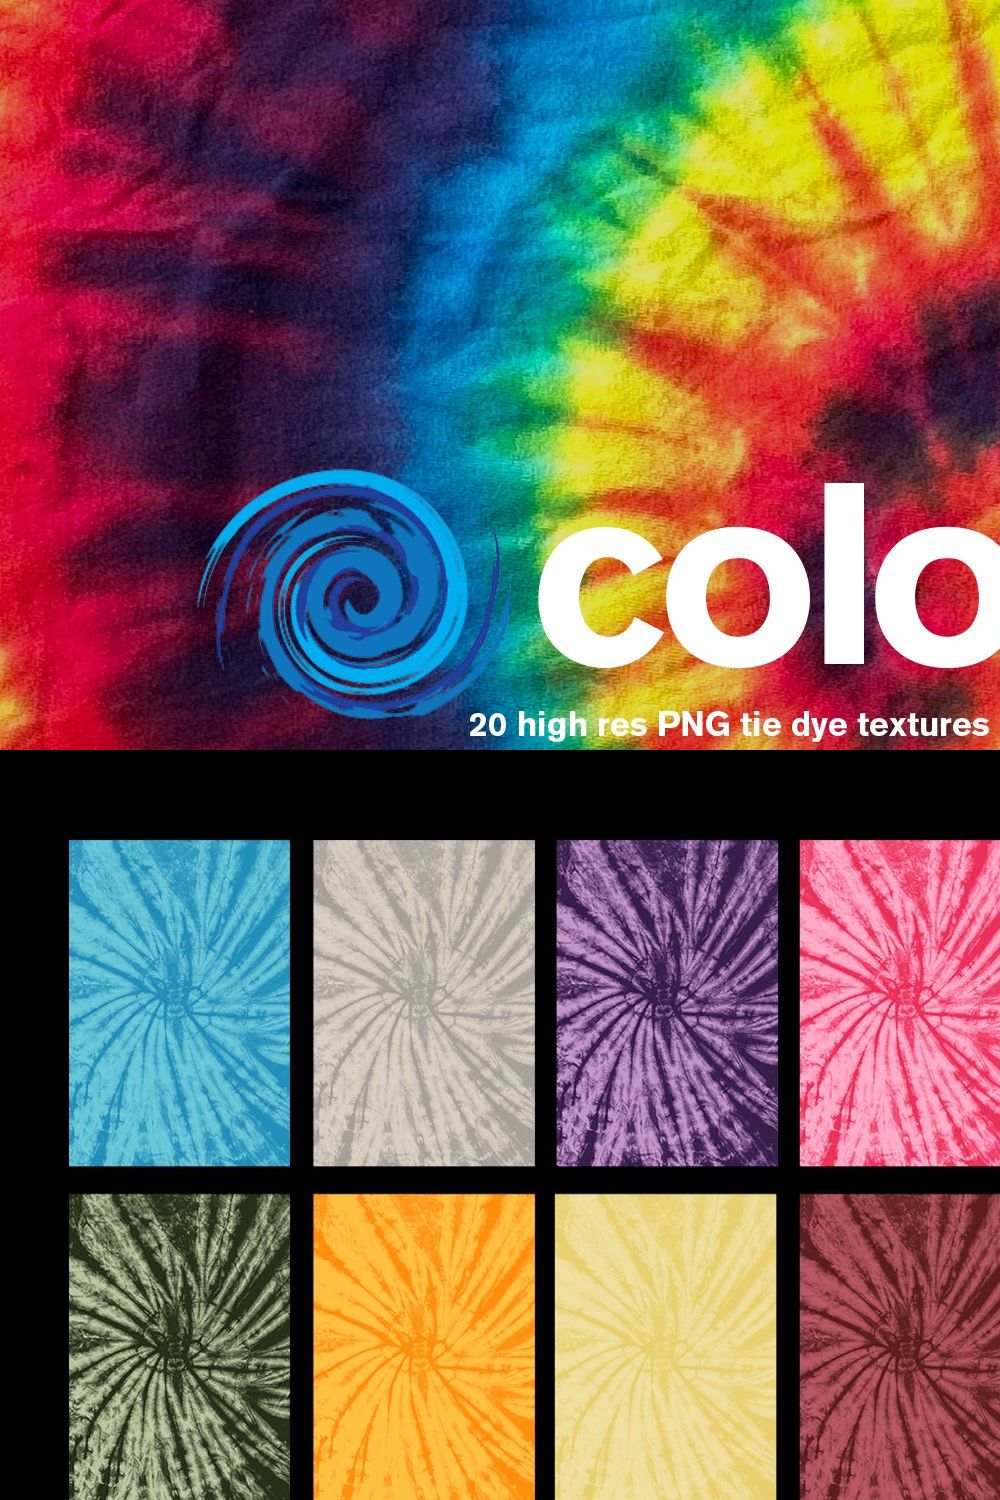 Colortone Tie Dye Textures pinterest preview image.